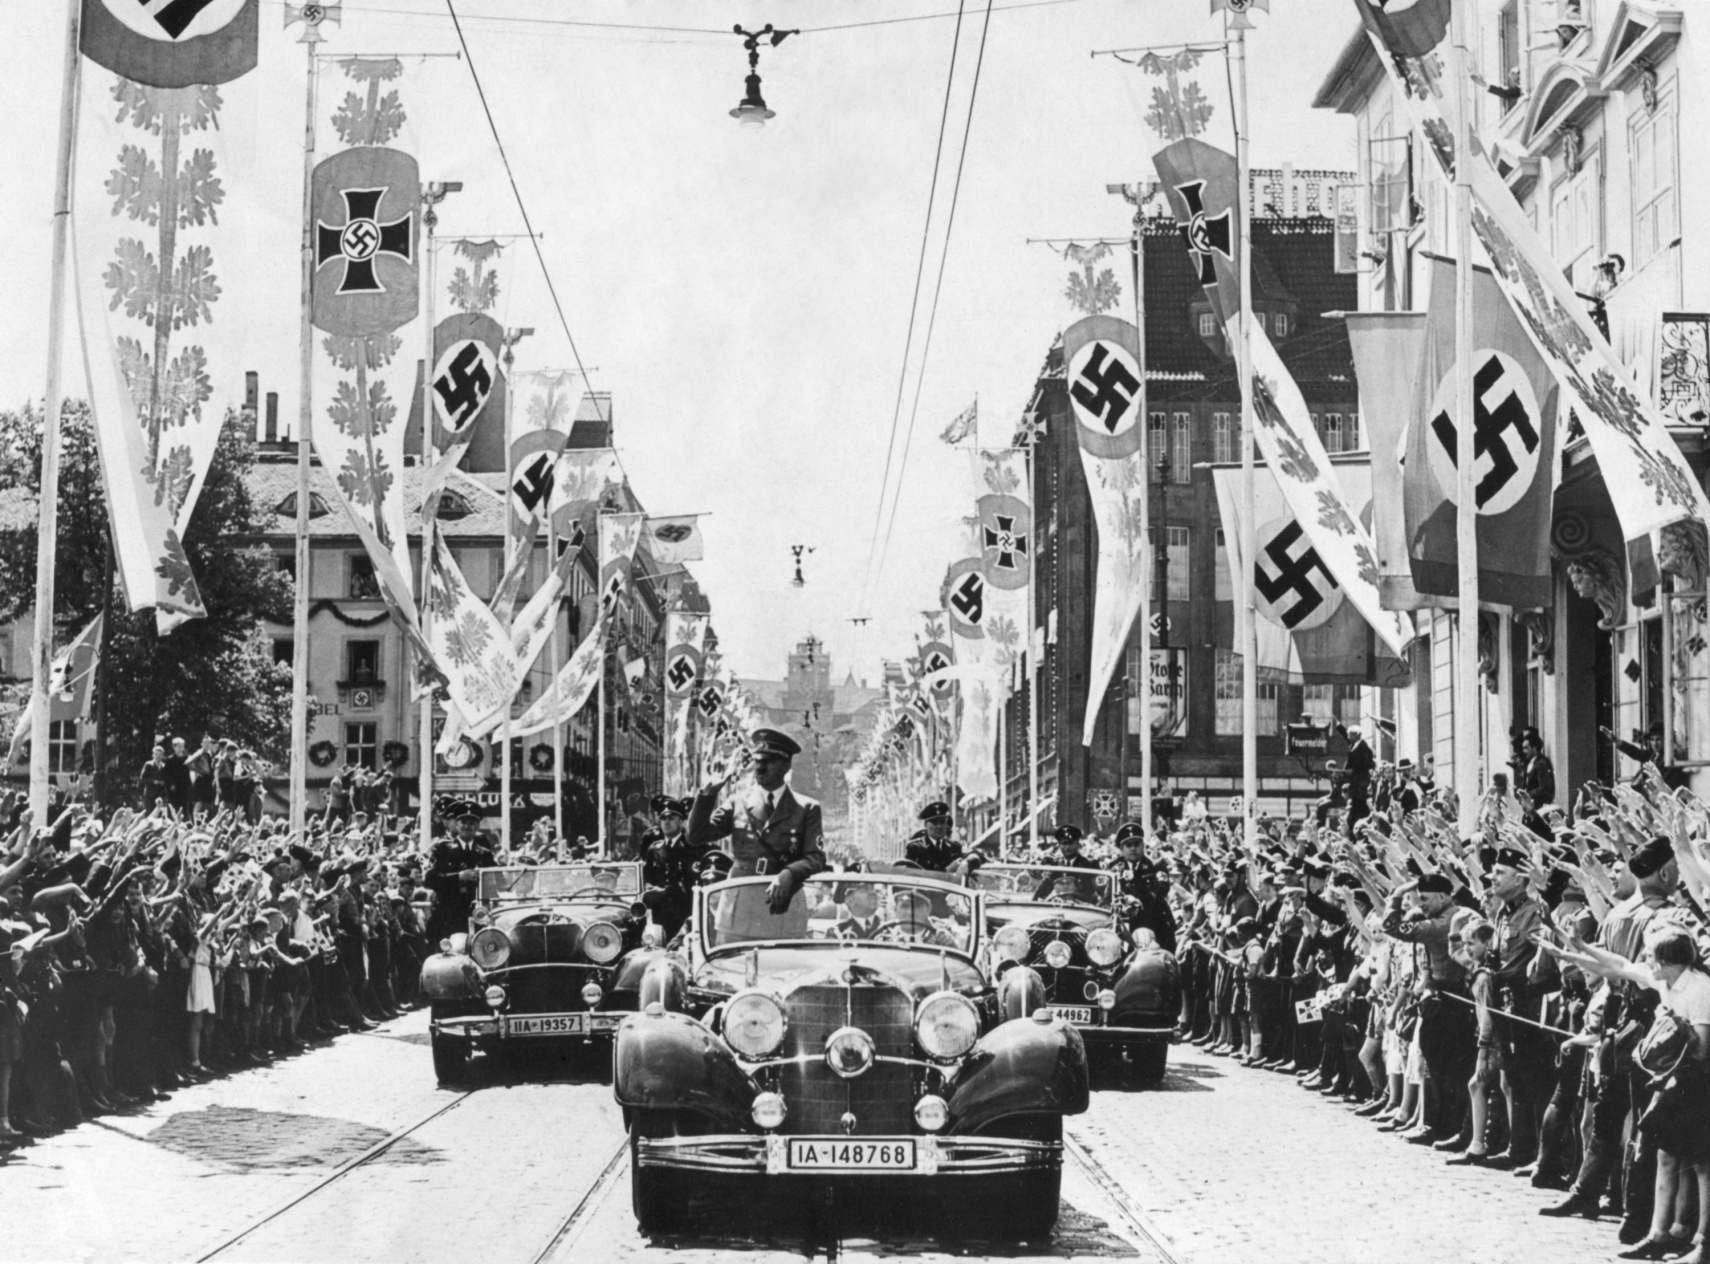 Адолф Хитлер маше маси из свог аутомобила на челу параде. Улице су украшене разним транспарентима са свастиком. Ца. 1934-38. Хитлер је имао згодан, али лажан разлог да одабере симбол свастике као своје инсигније. Користили су га аријевски номади Индије у другом миленијуму. У нацистичкој теорији, Аријевци су били немачког порекла, а Хитлер је закључио да је свастика била вечно антисемитска.